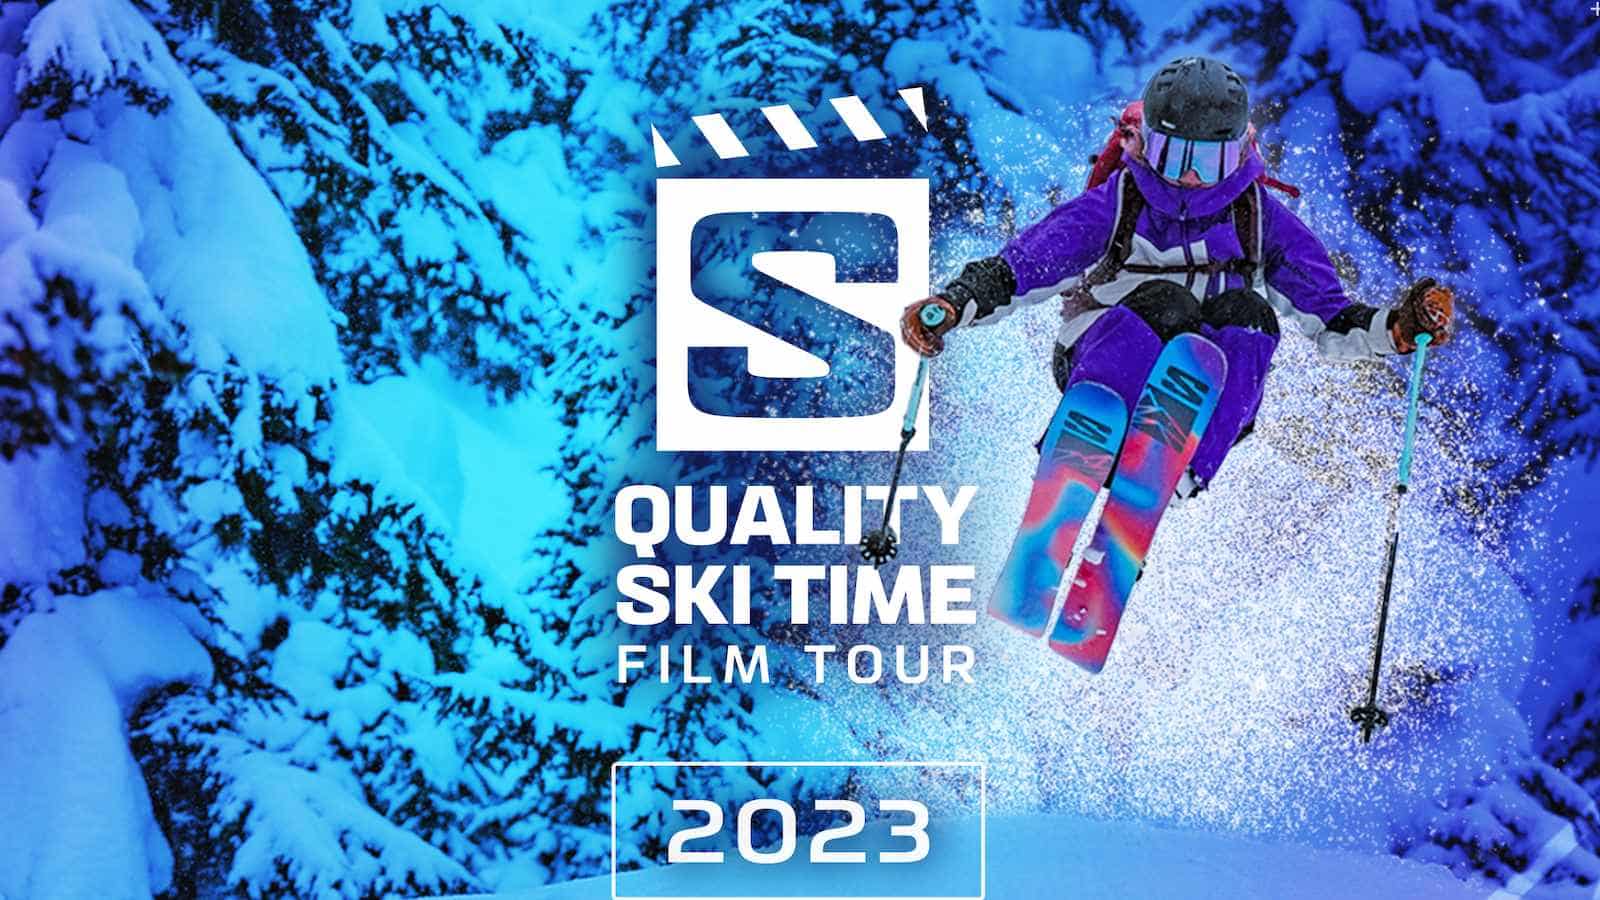 Quality Ski Time Film Tour presented by Salomon